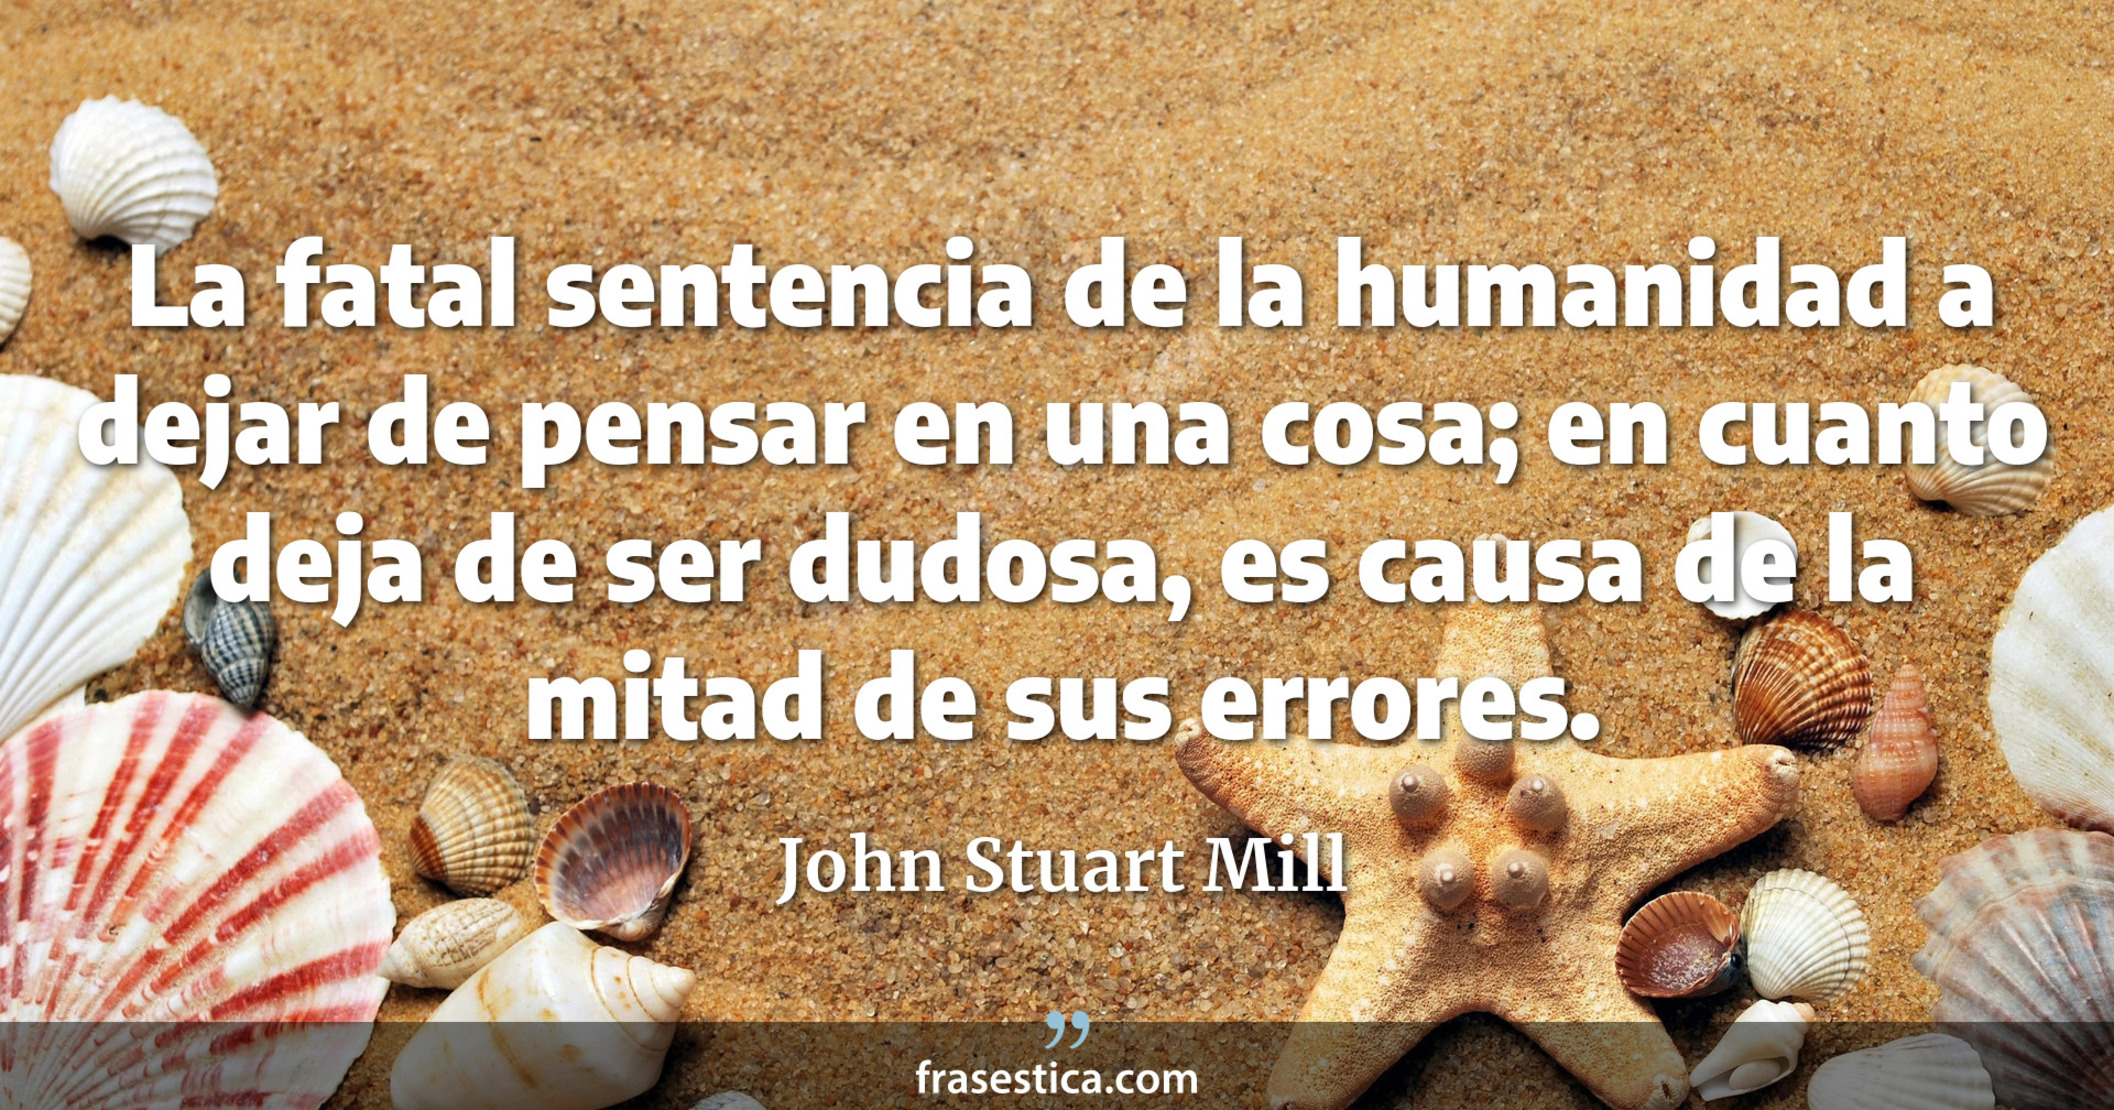 La fatal sentencia de la humanidad a dejar de pensar en una cosa; en cuanto deja de ser dudosa, es causa de la mitad de sus errores. - John Stuart Mill